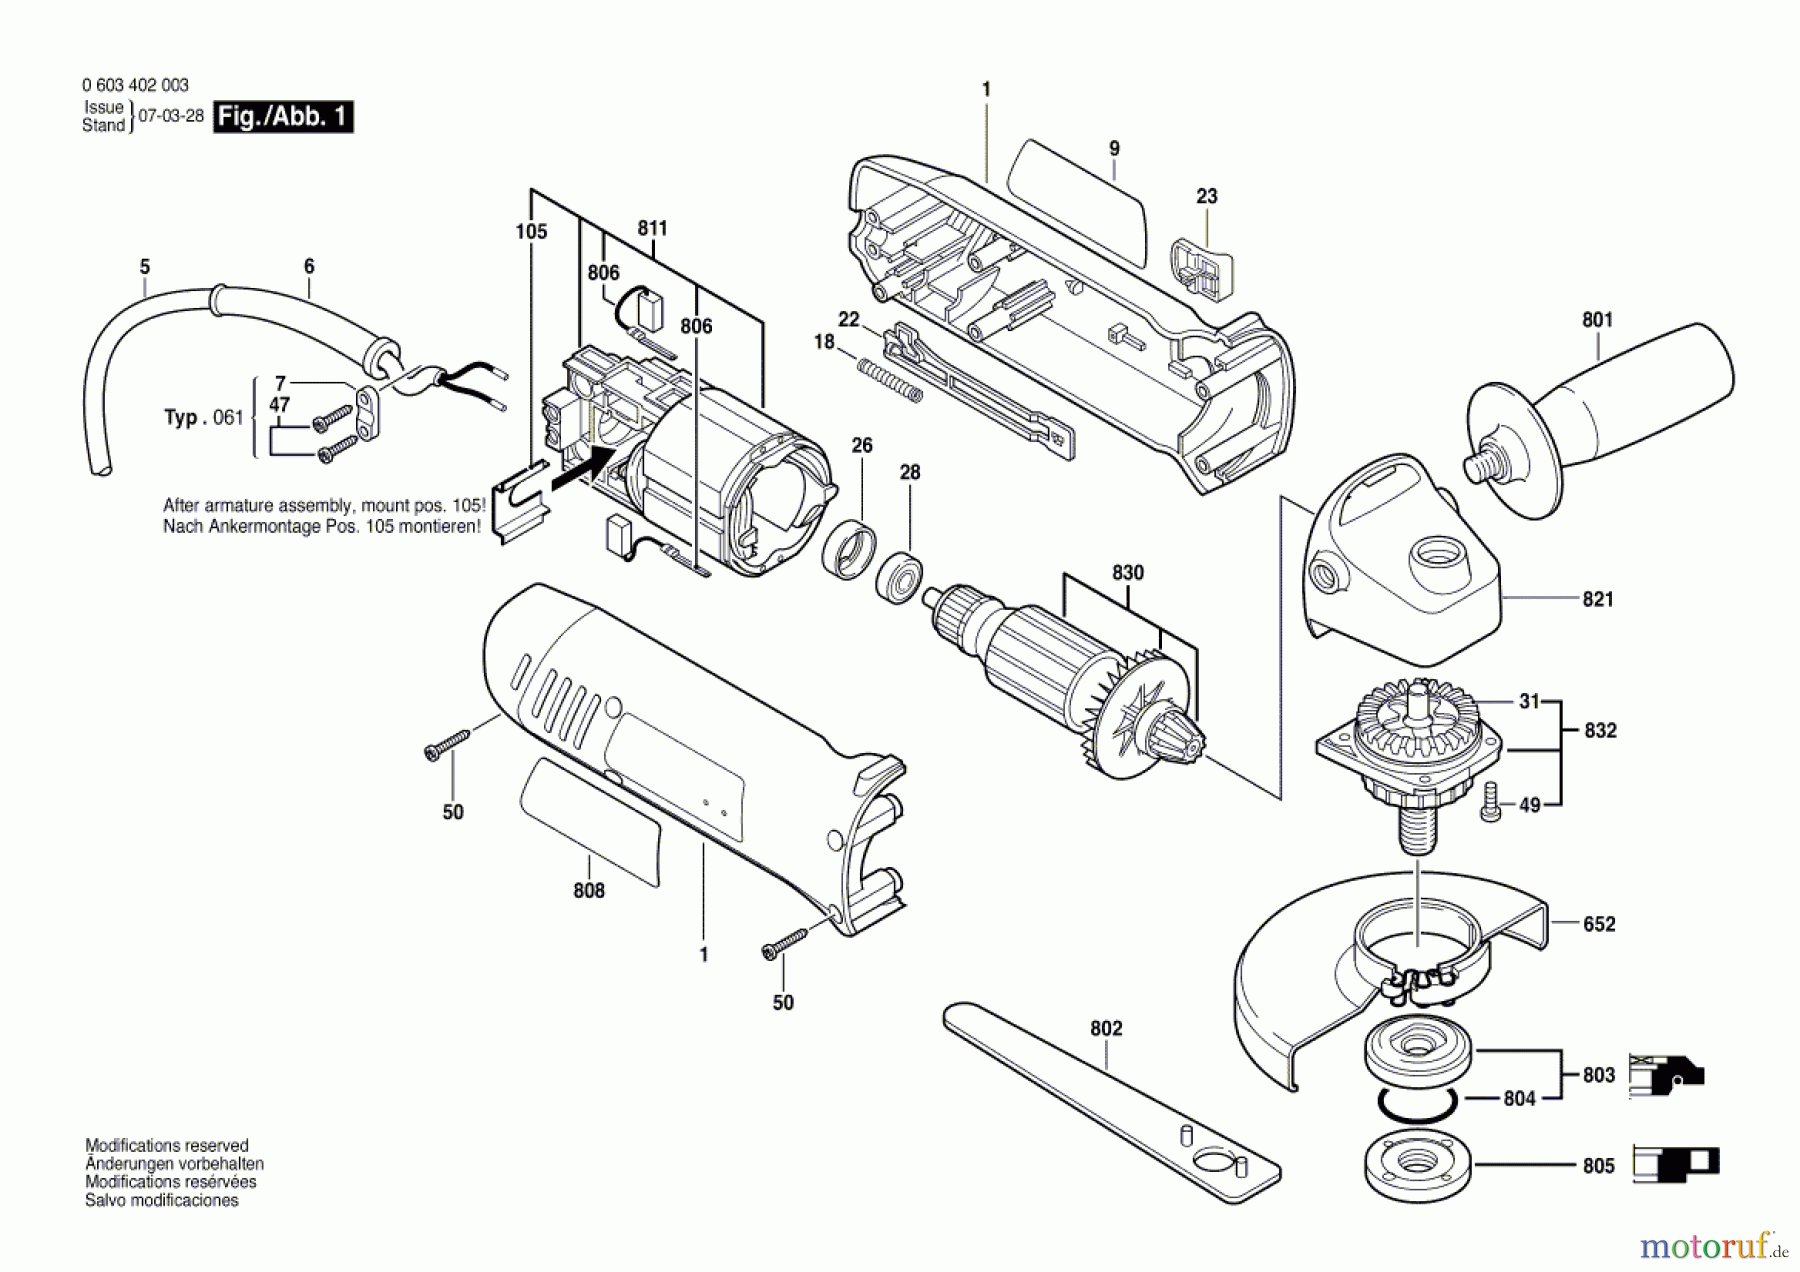  Bosch Werkzeug Winkelschleifer PWS 720 Seite 1